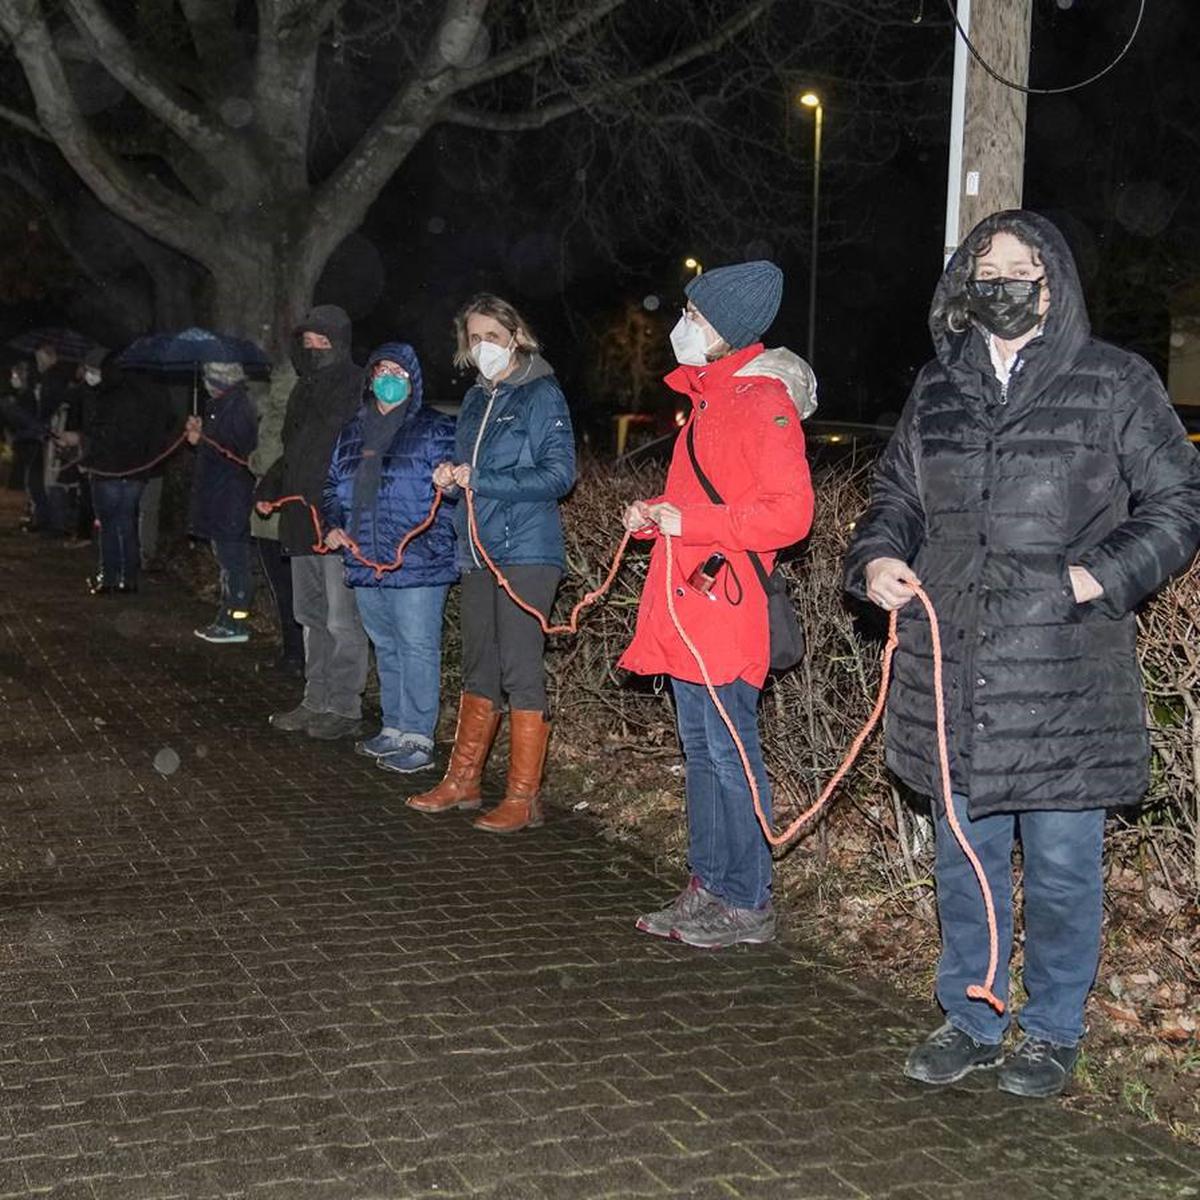 Protest und Gegenprotest: Die Spaziergänge in Rheinhessen